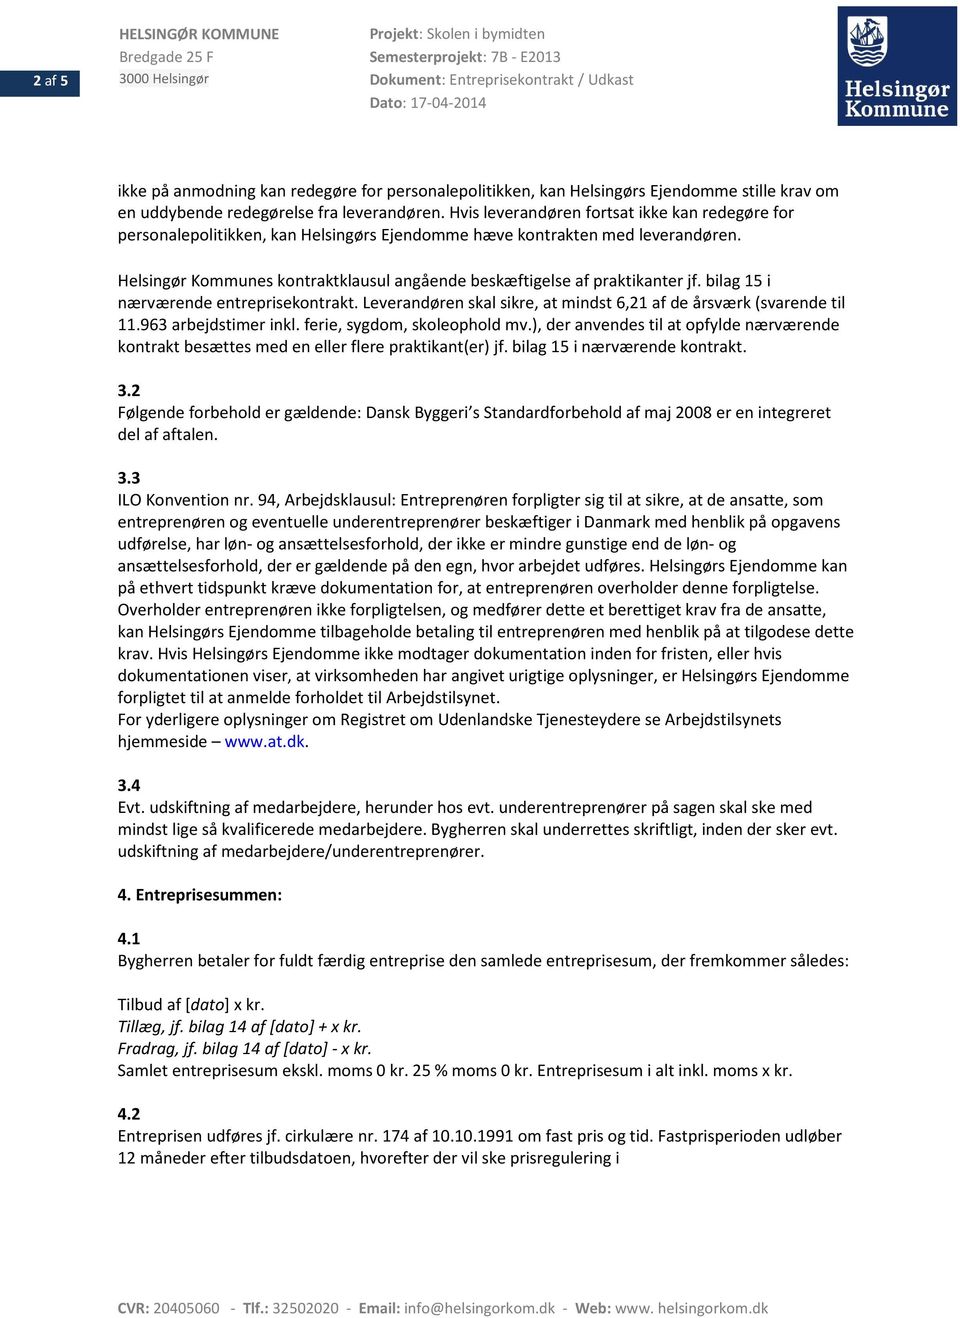 Helsingør Kommunes kontraktklausul angående beskæftigelse af praktikanter jf. bilag 15 i nærværende entreprisekontrakt. Leverandøren skal sikre, at mindst 6,21 af de årsværk (svarende til 11.